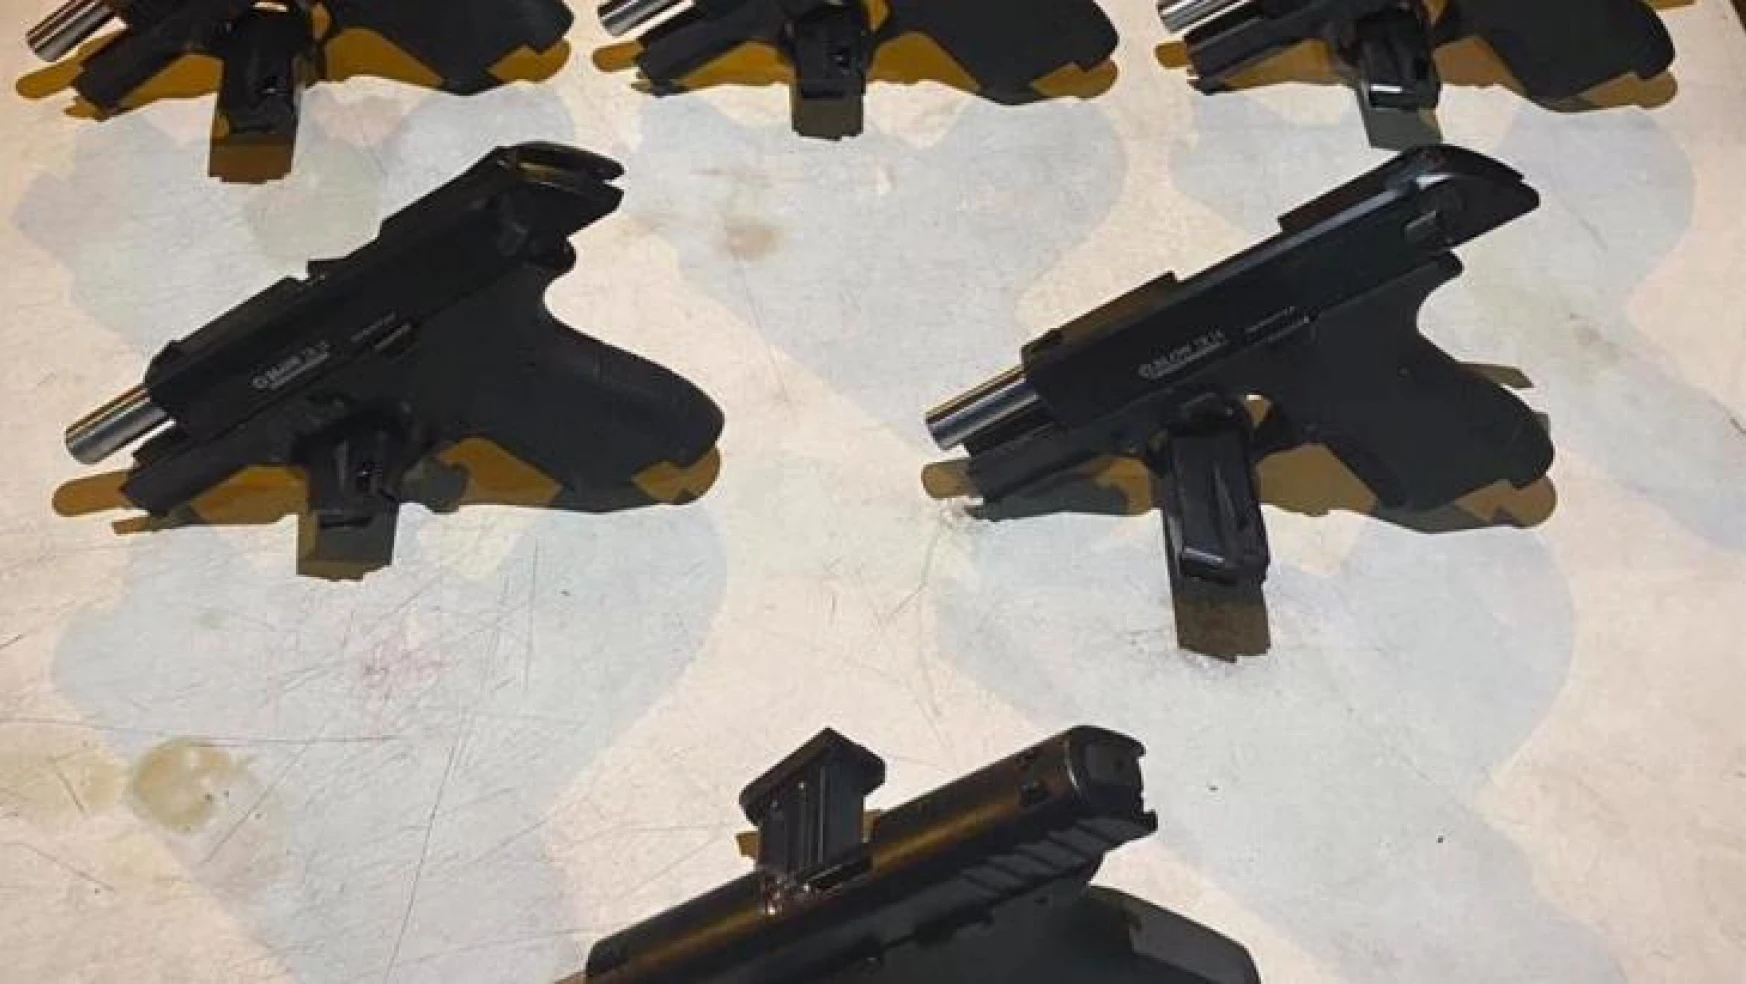 Mersin'de bir araçta 6 adet ruhsatsız tabanca ele geçirildi